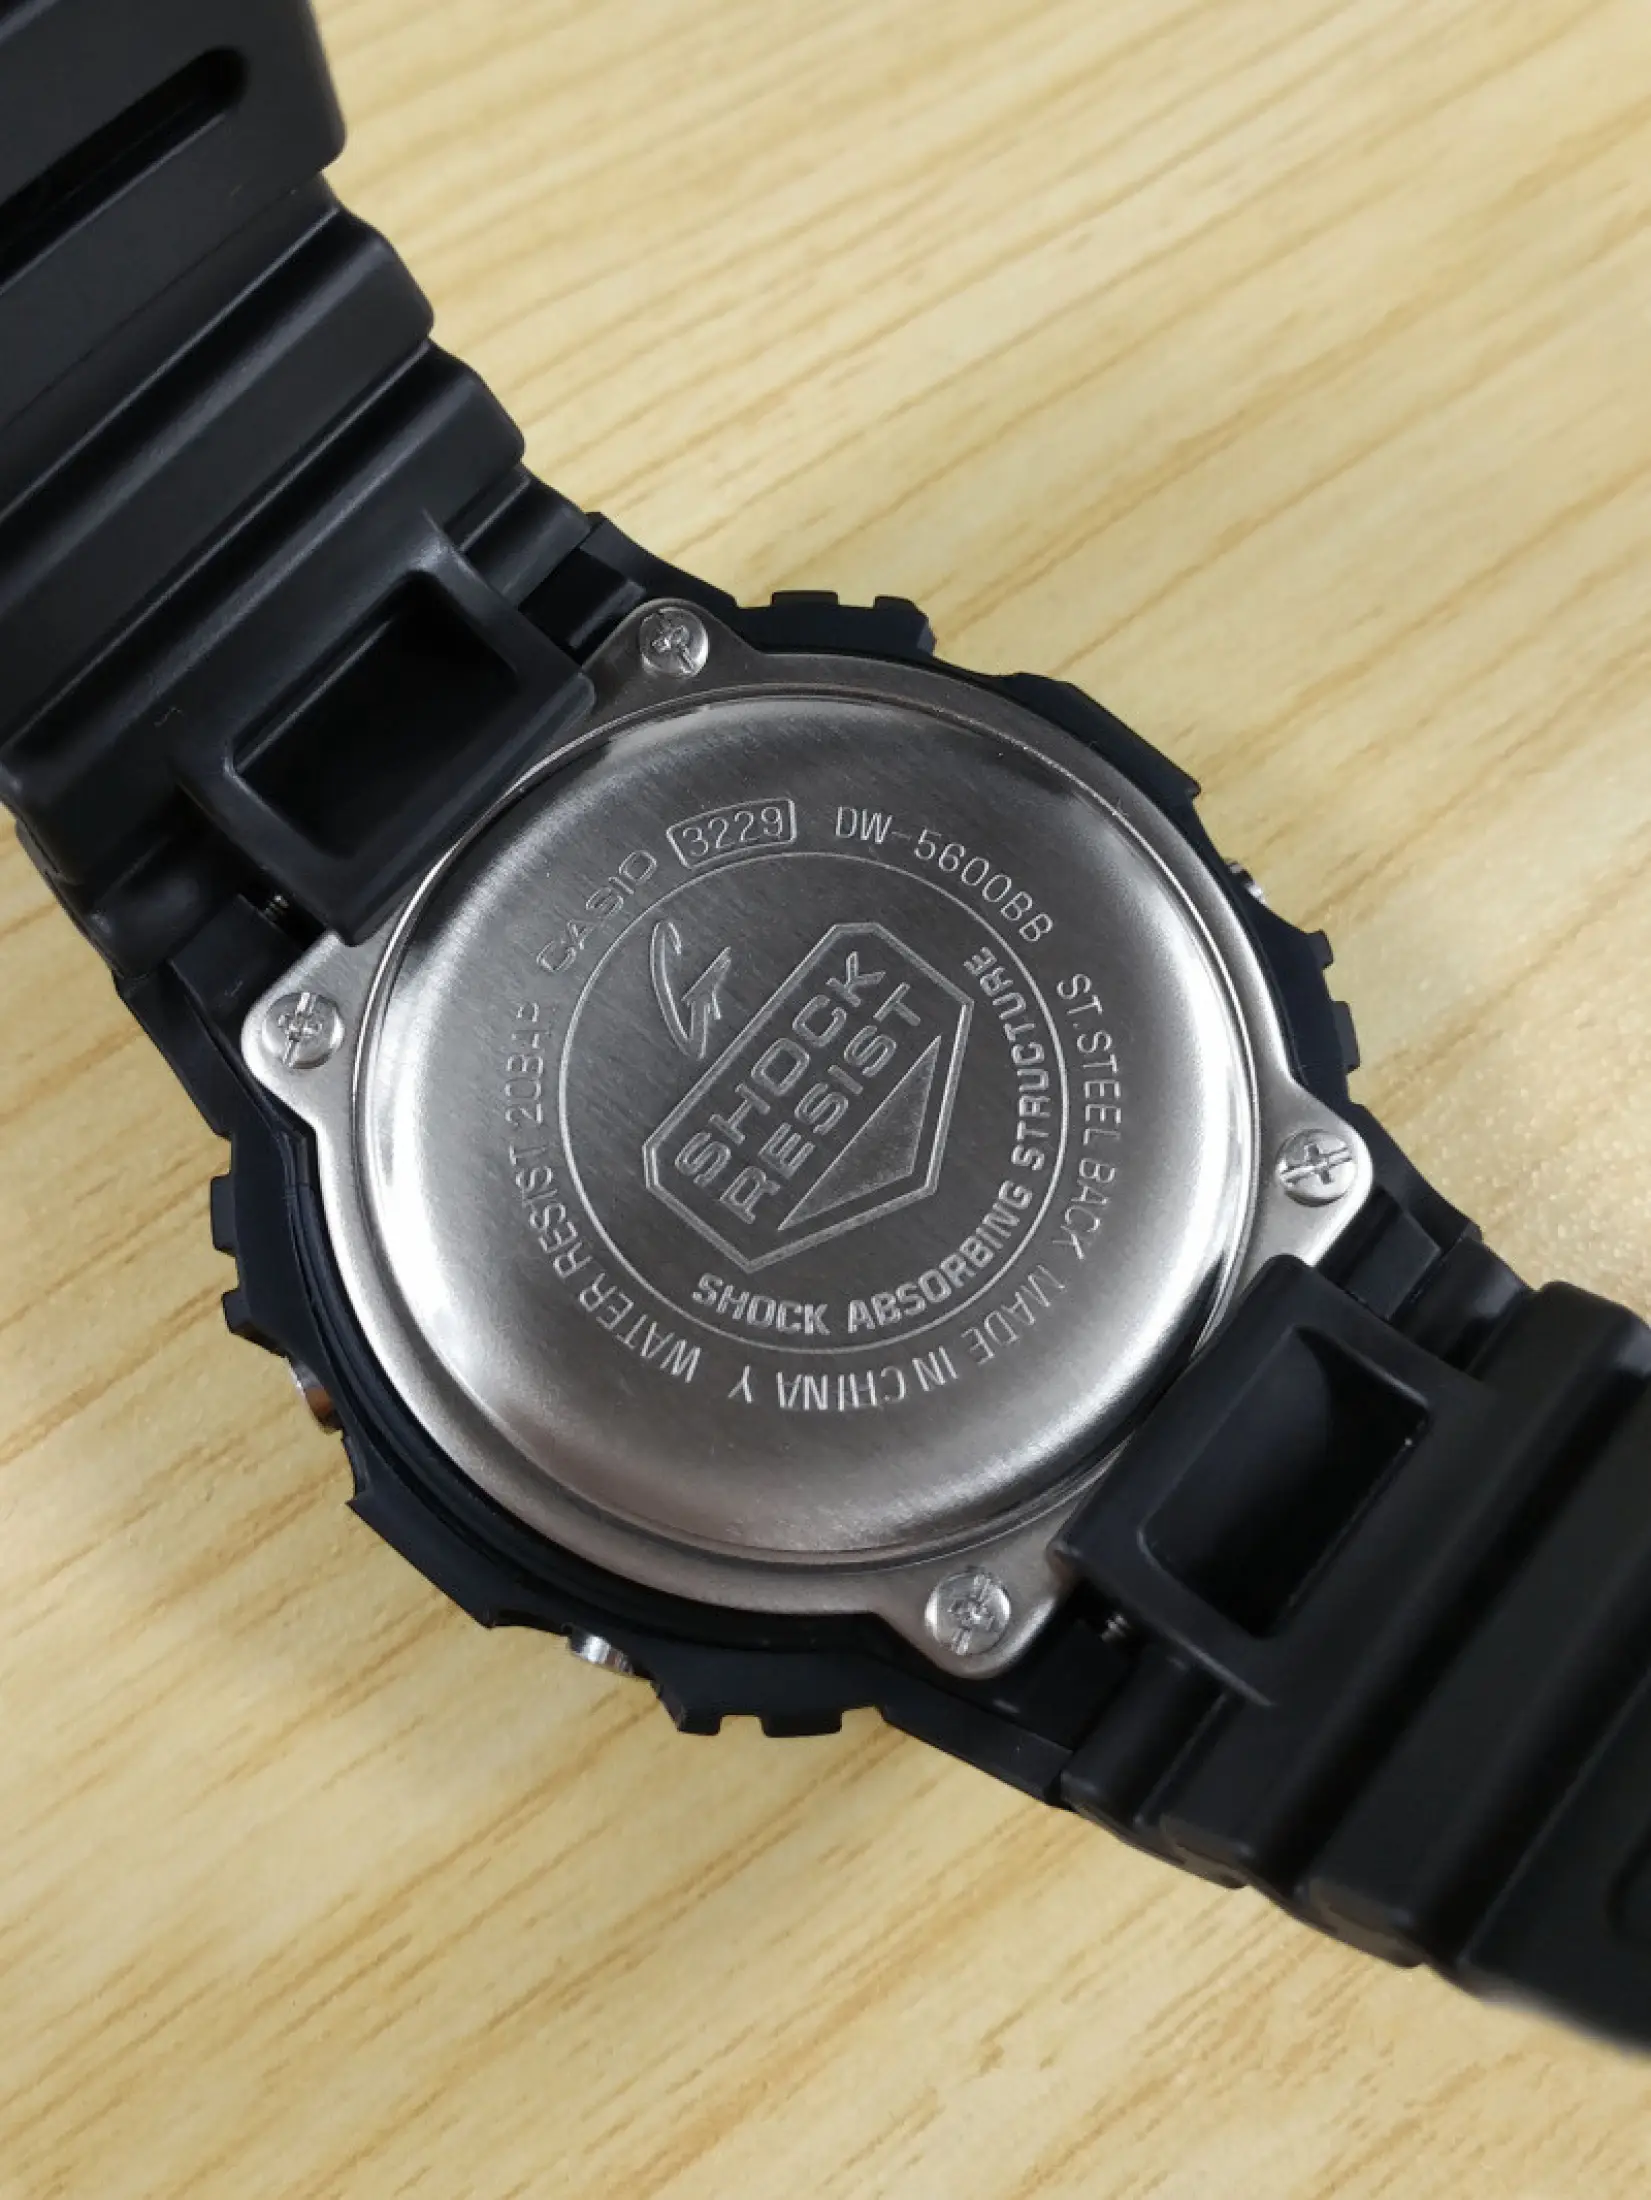 รายละเอียดเพิ่มเติมเกี่ยวกับ CASIO G-SHOCK นาฬิกาข้อมือผู้ชาย รุ่น DW-5600BB-1 (สีดำ/black)